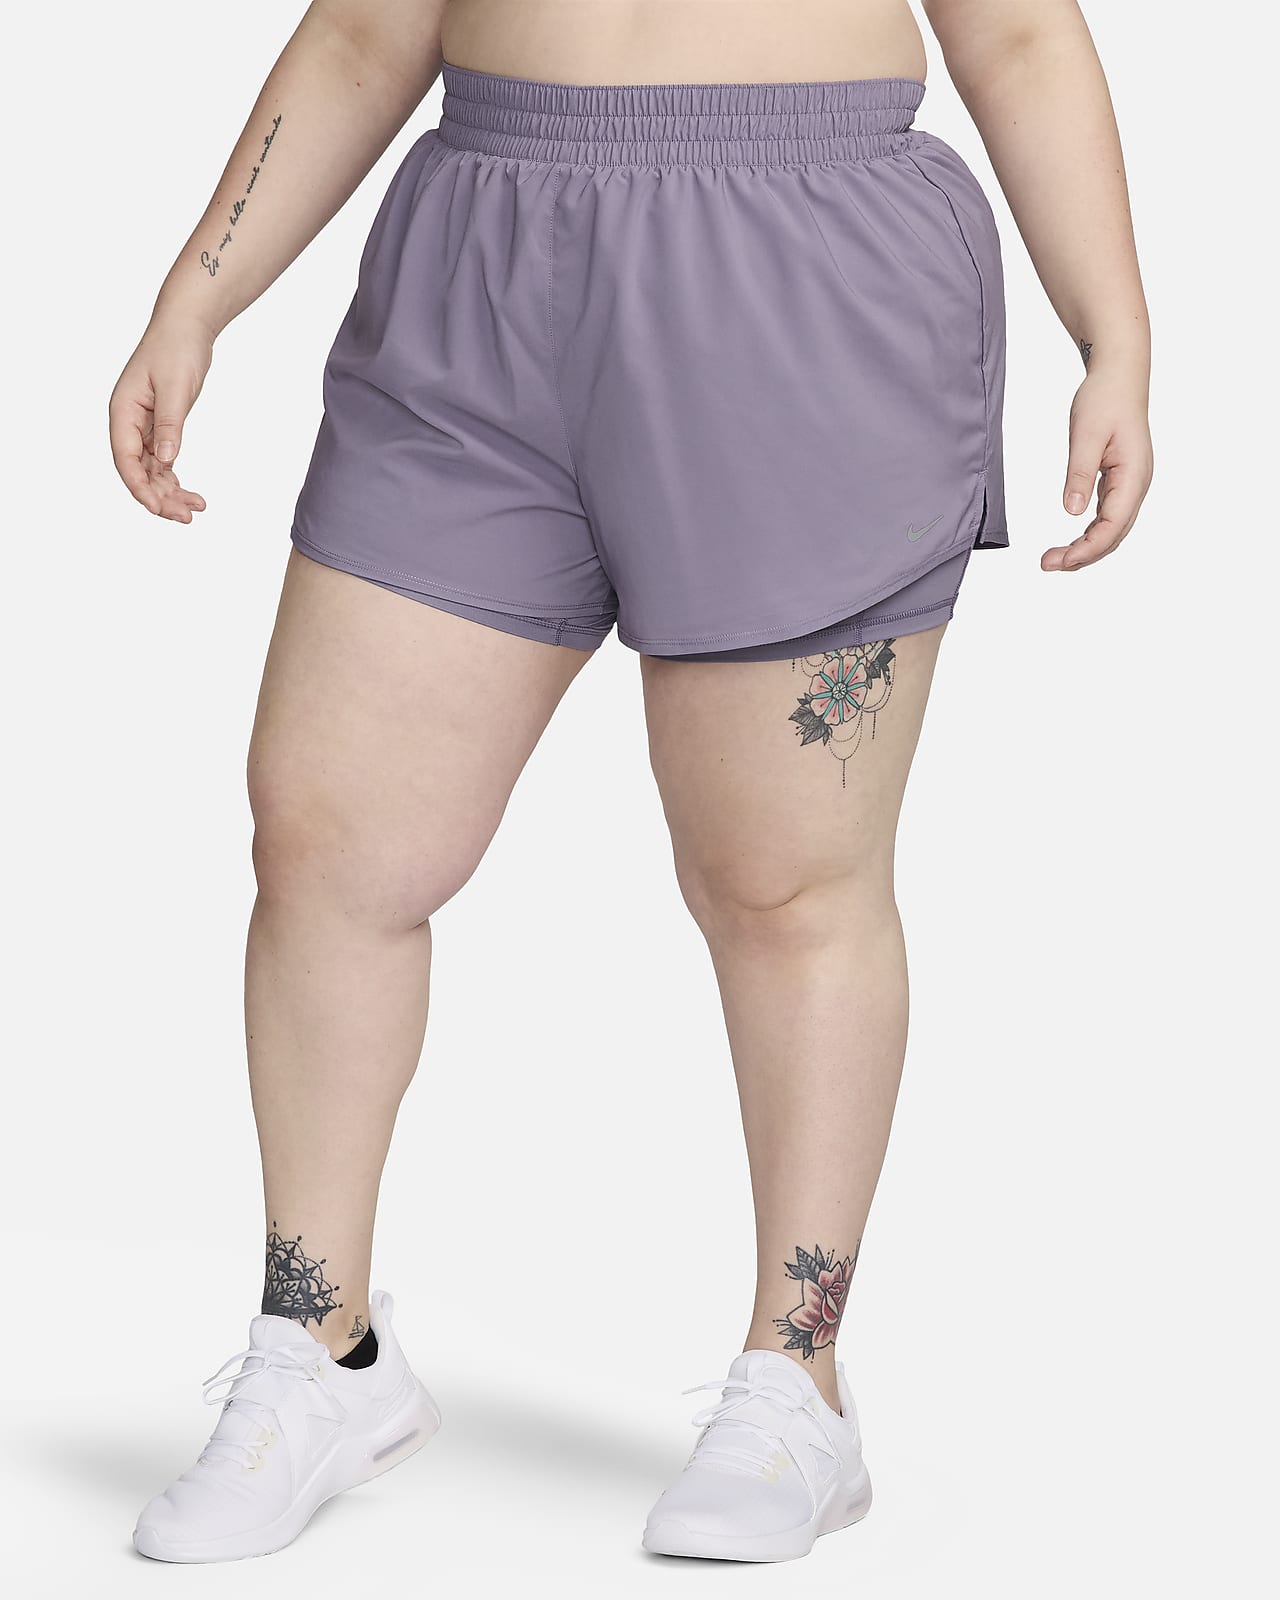 Shorts de tiro alto de 8 cm 2 en 1 para mujer (talla grande) Nike Dri-FIT One